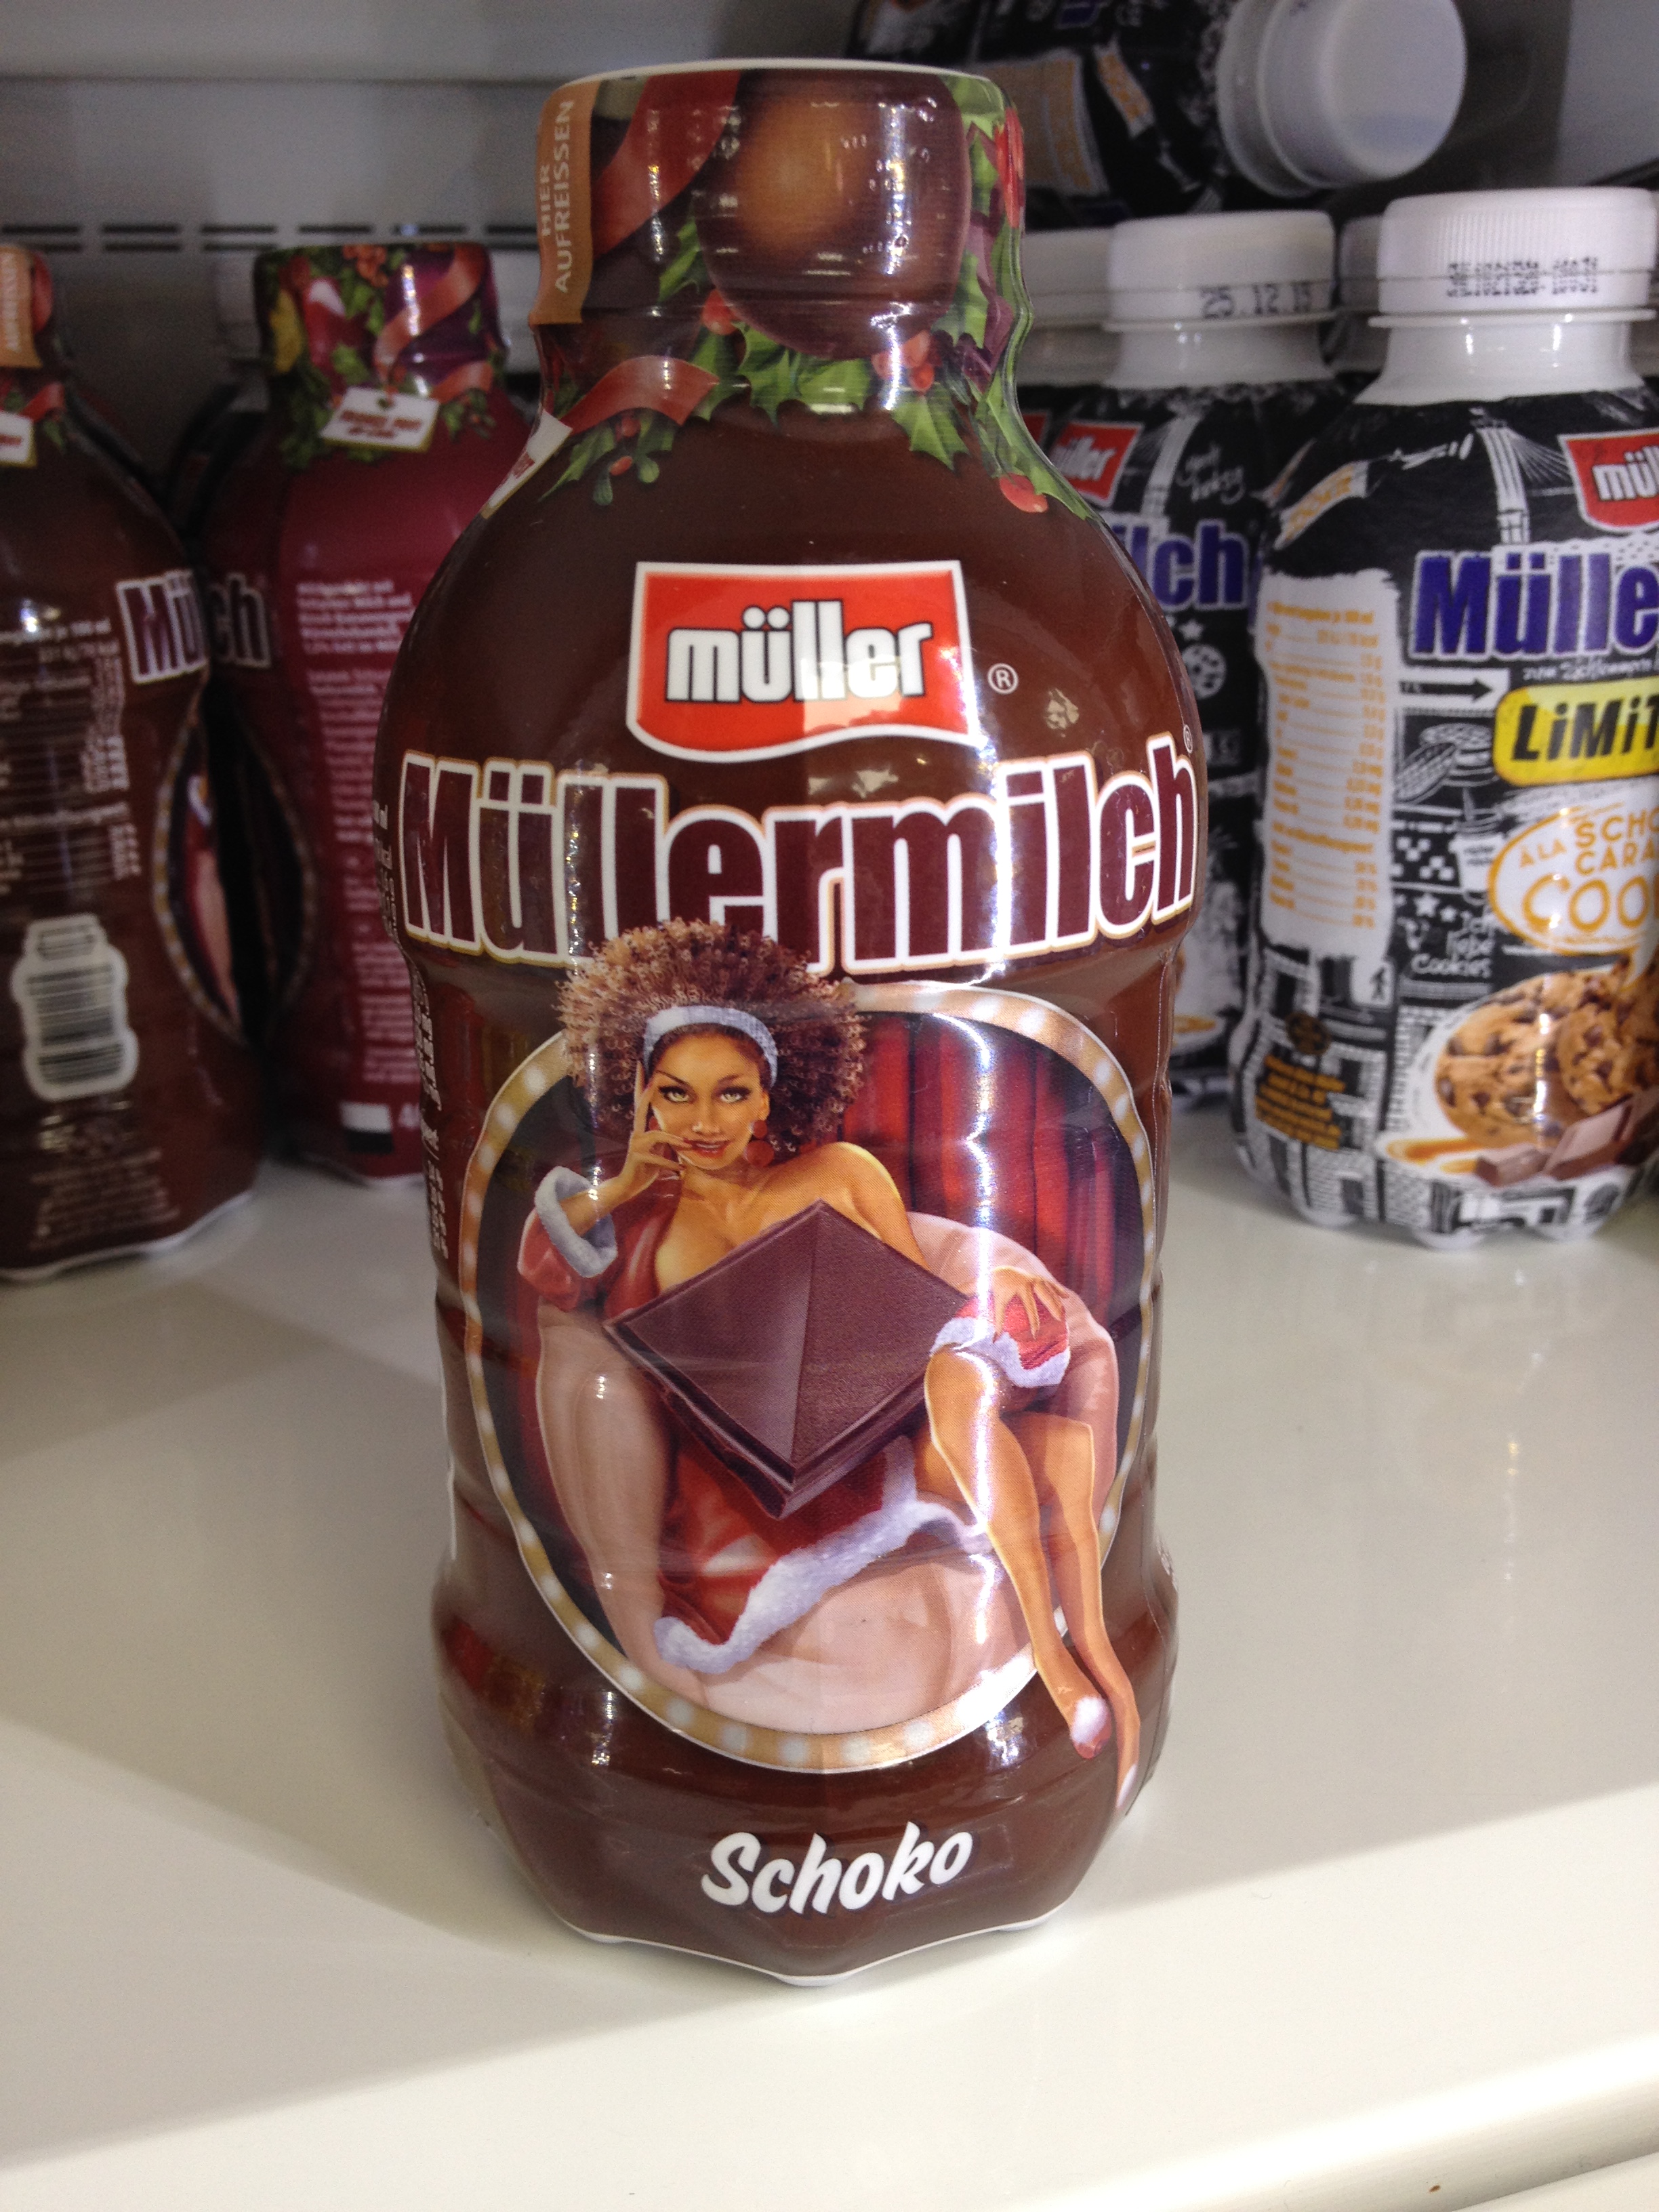 Müller-Milch steht für sexistische und rassistische Werbung in der